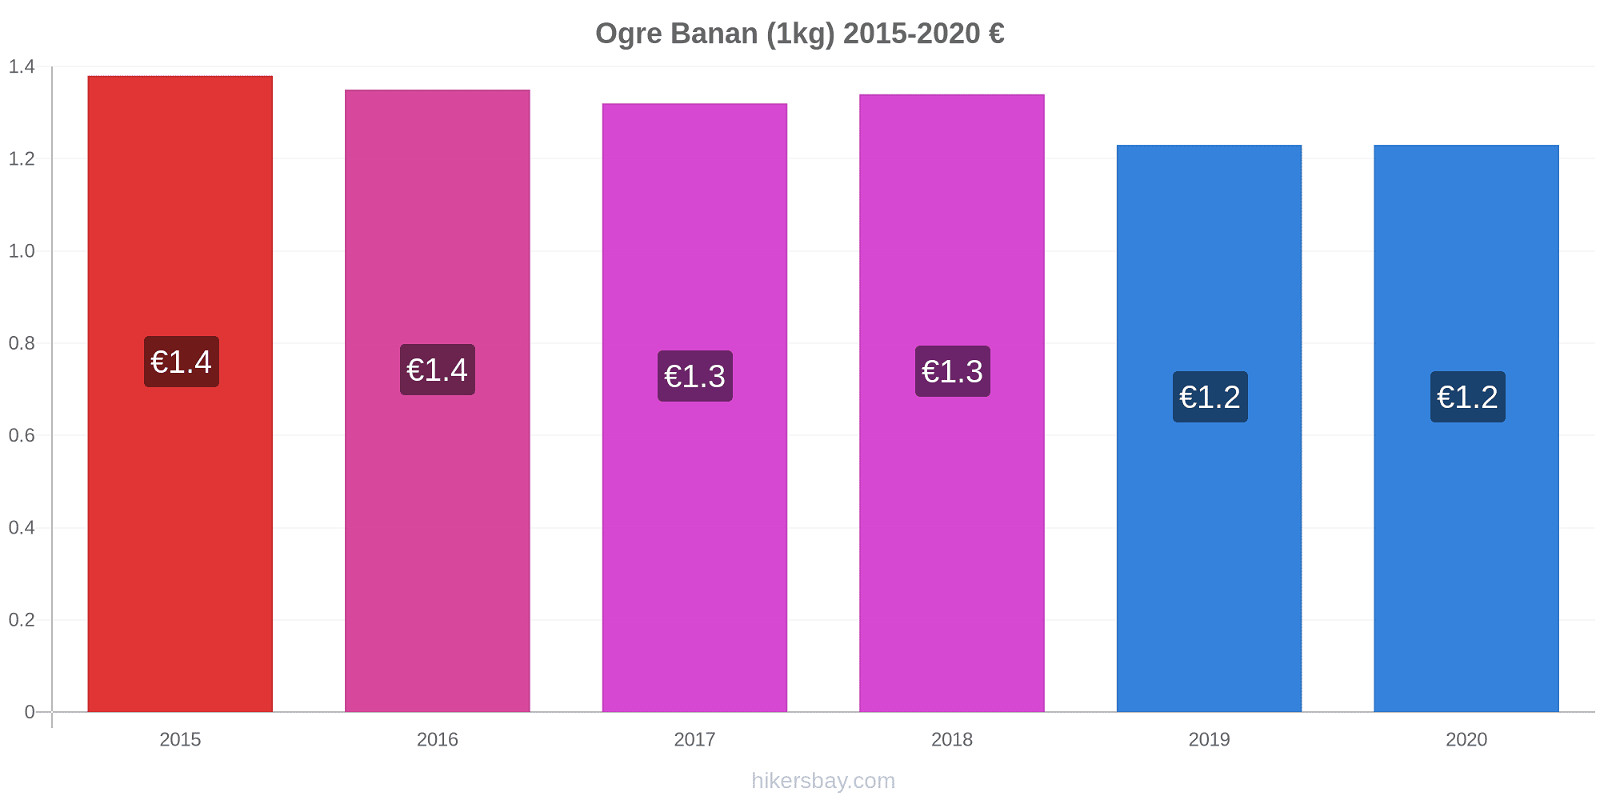 Ogre prisförändringar Banan (1kg) hikersbay.com